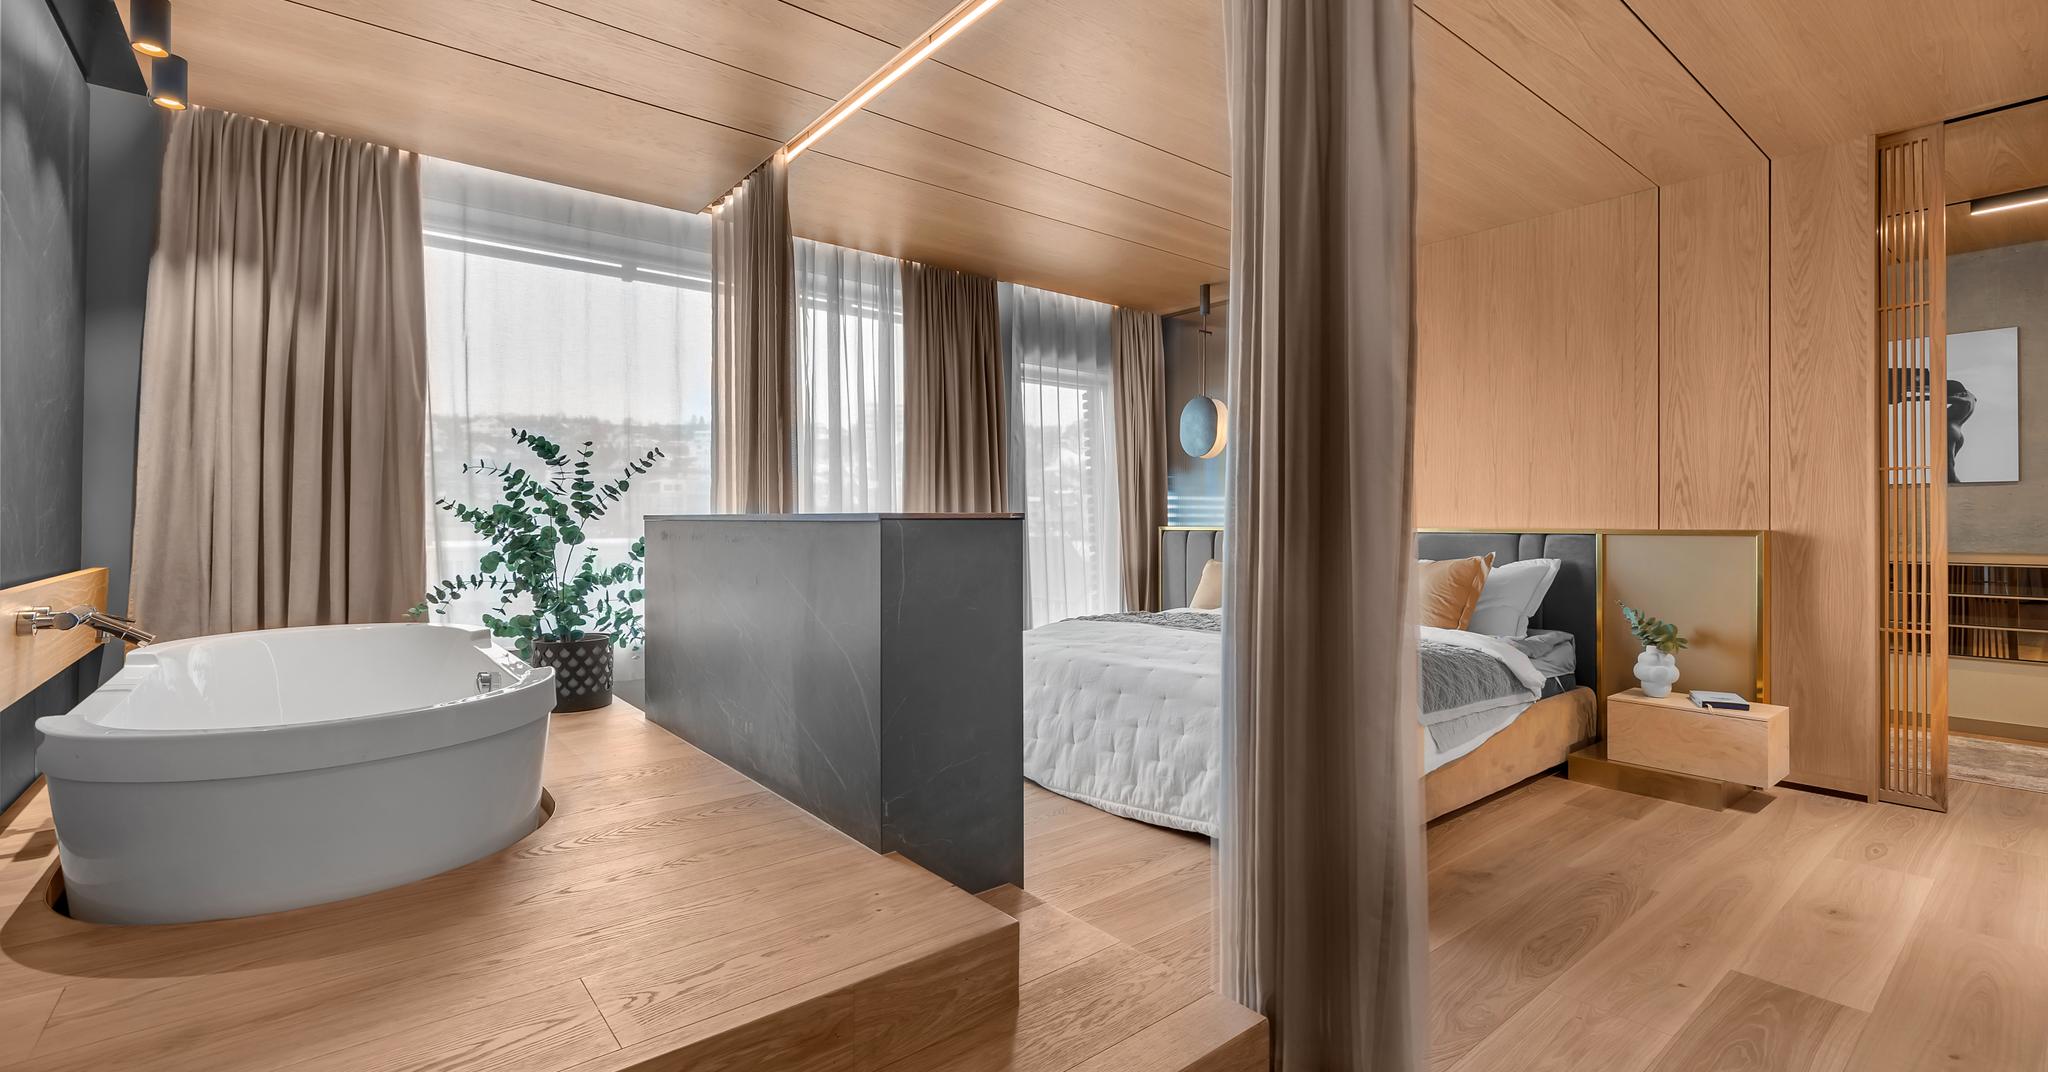 Denne leiligheten i Tromsø har Julie Johnsen designet. Den fikk ny planløsning. Ett av de viktigste grepene var å lage soverommet mye større, i tillegg til å inkludere badet i rommet. 